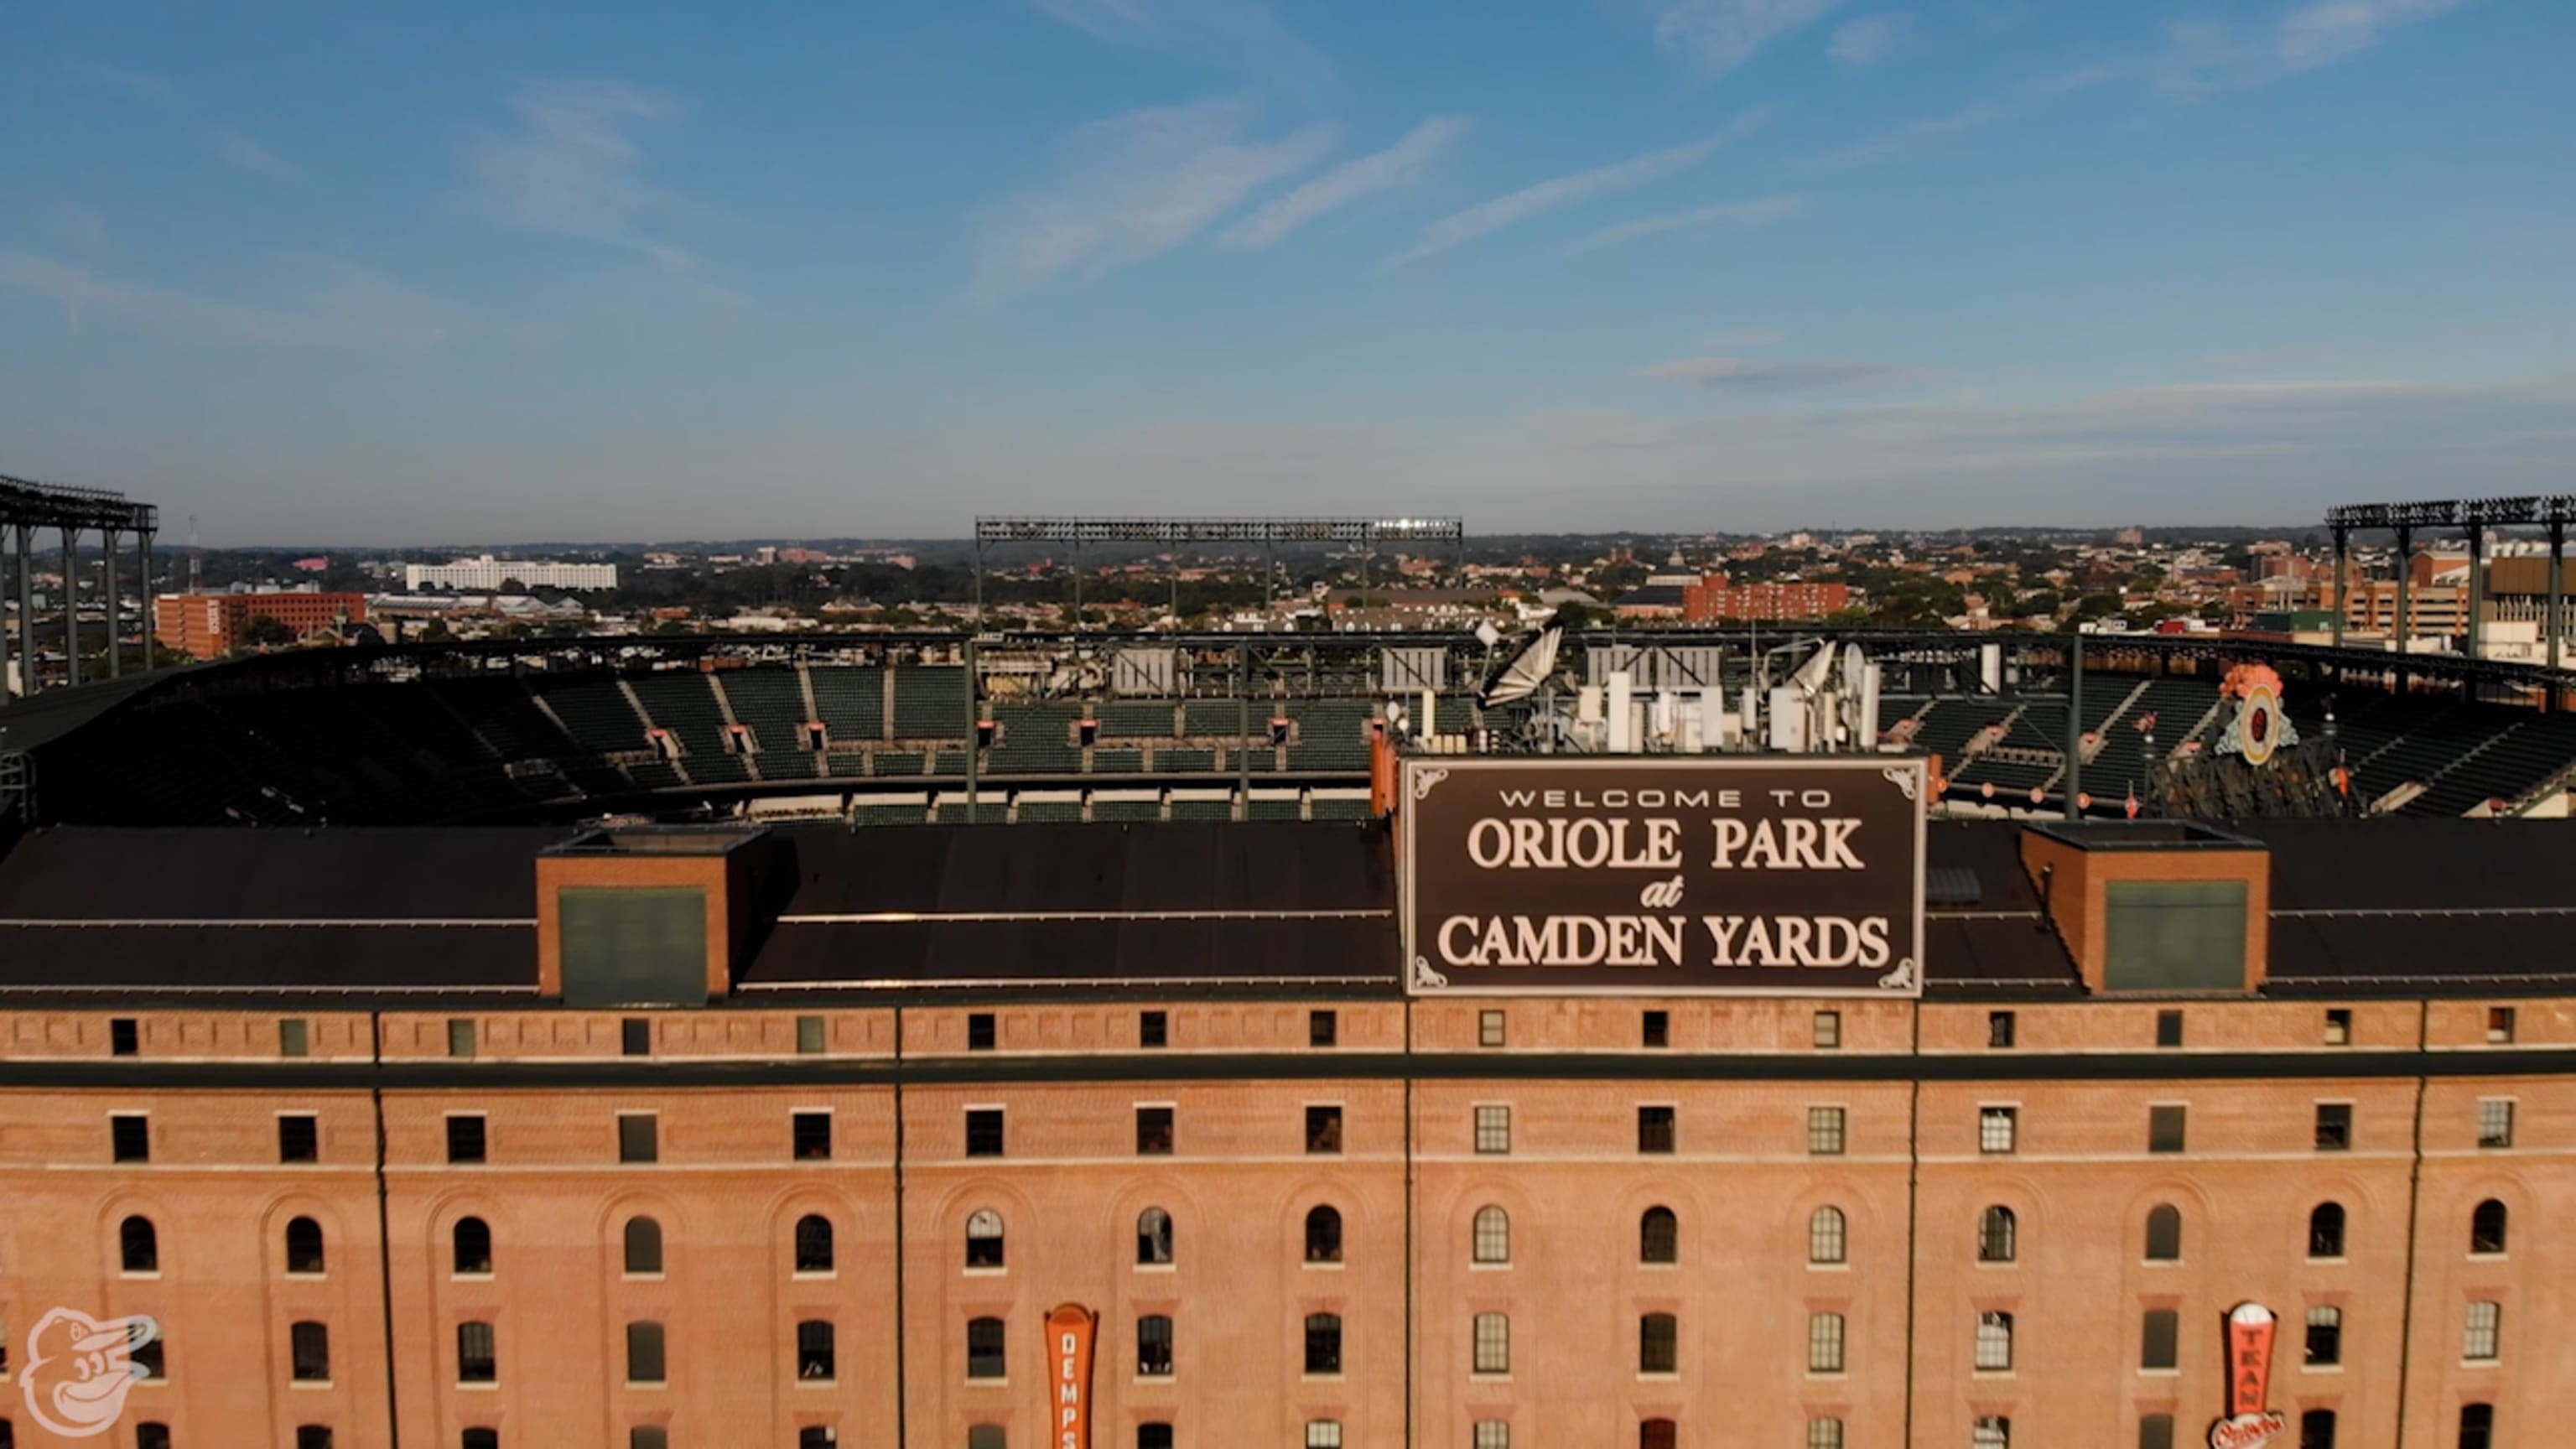 30th Anniversary of Camden Yards